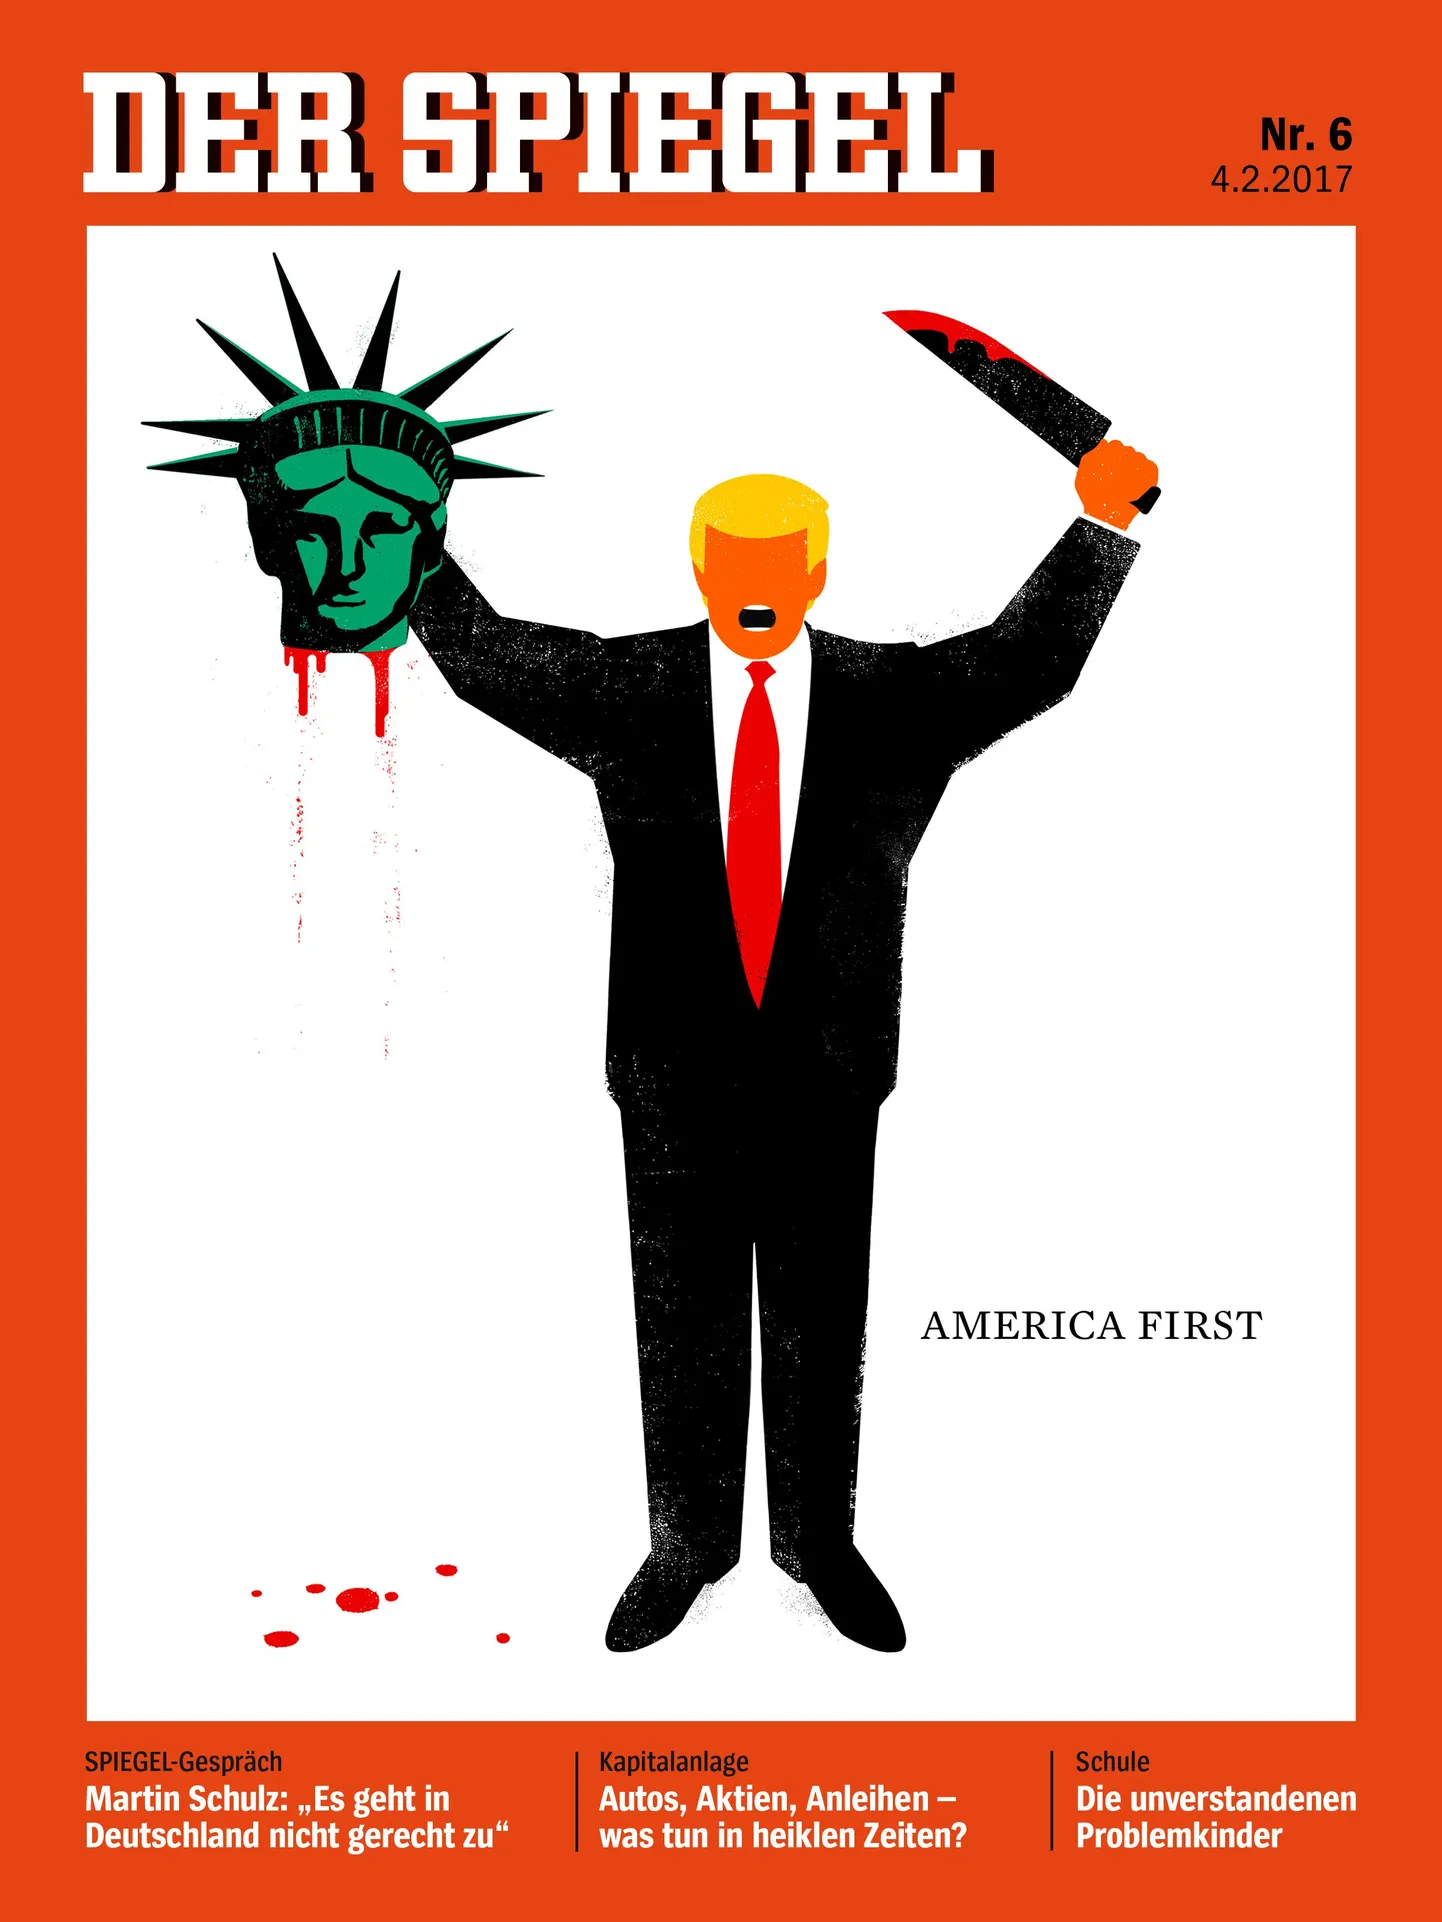 Скандальная обложка Der Spiegel.